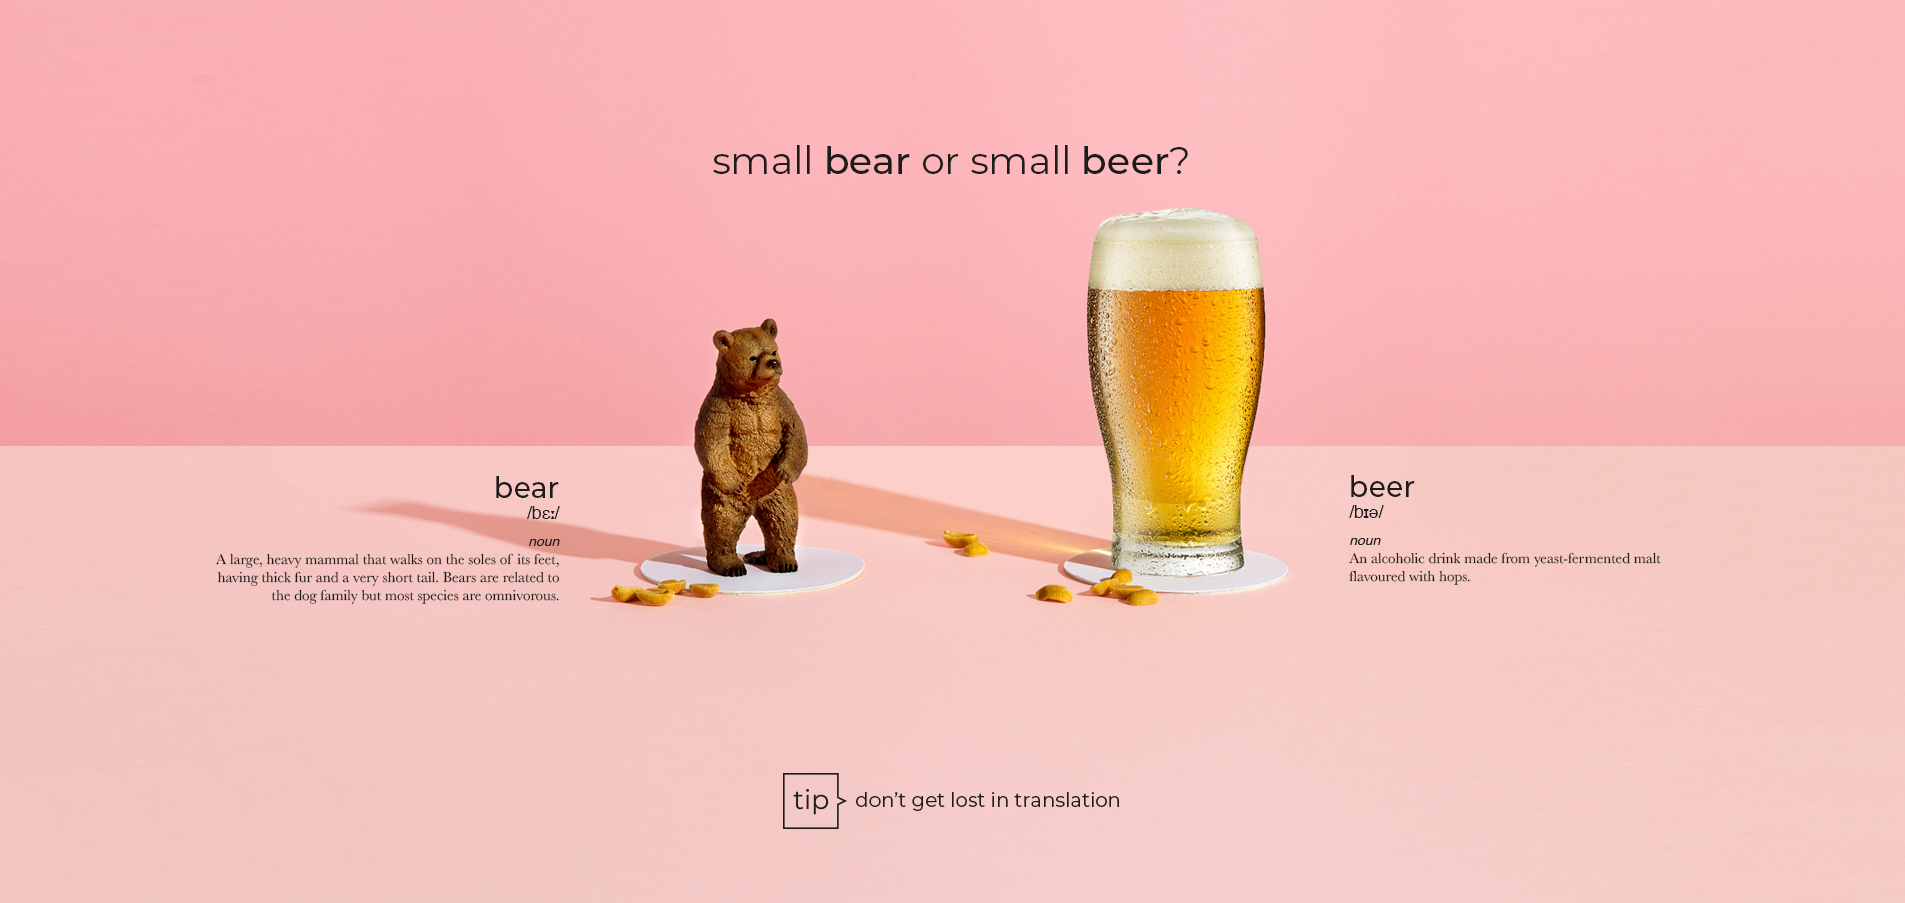 bear beer